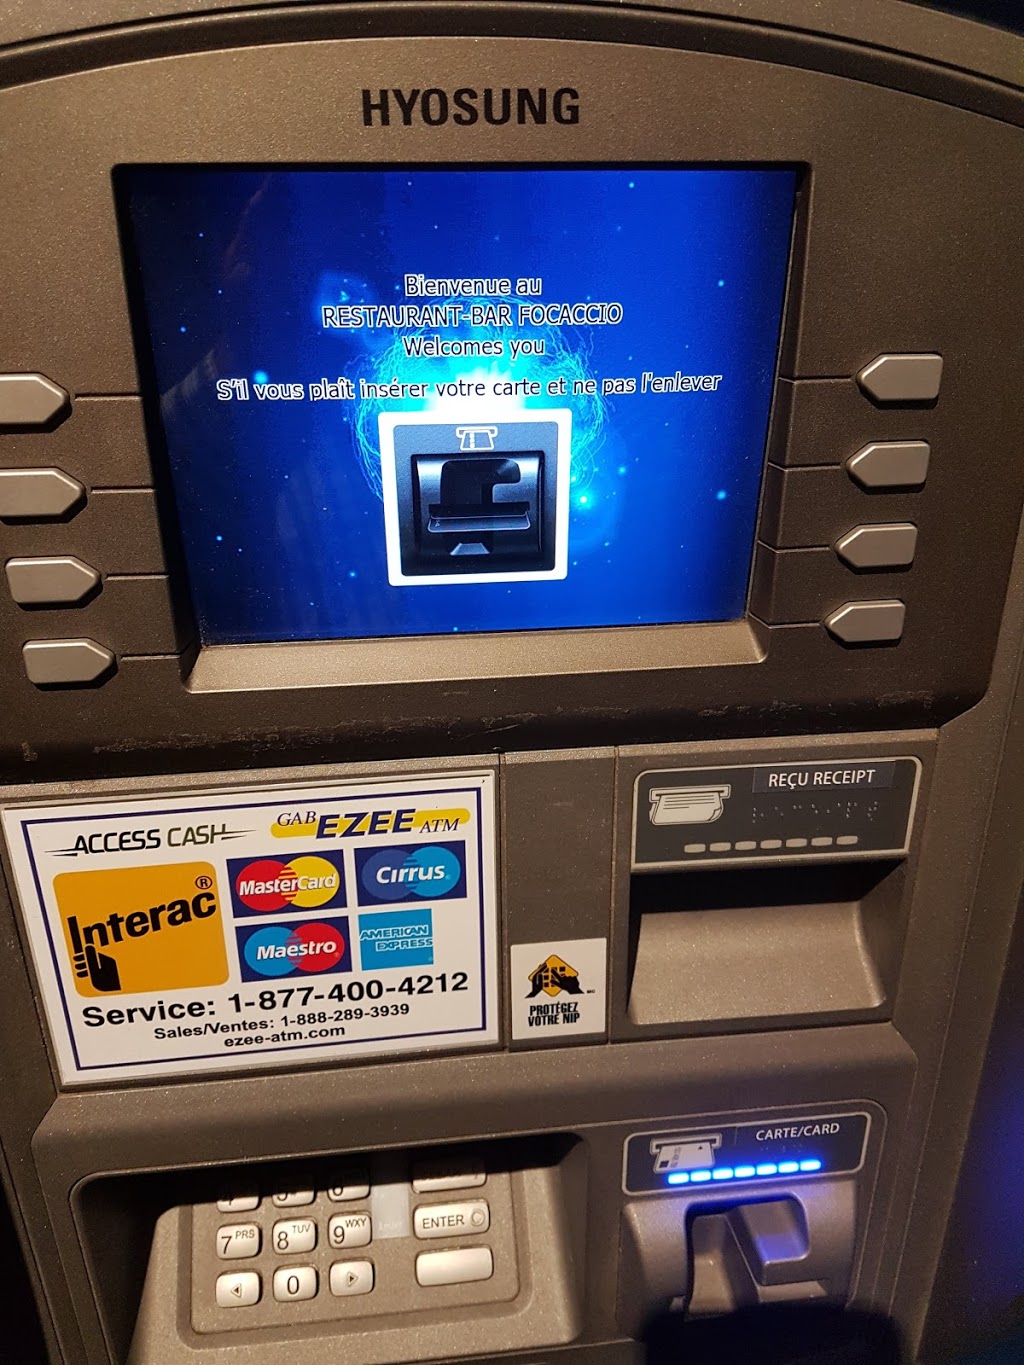 ATM | Dorval, QC H9P 1C3, Canada